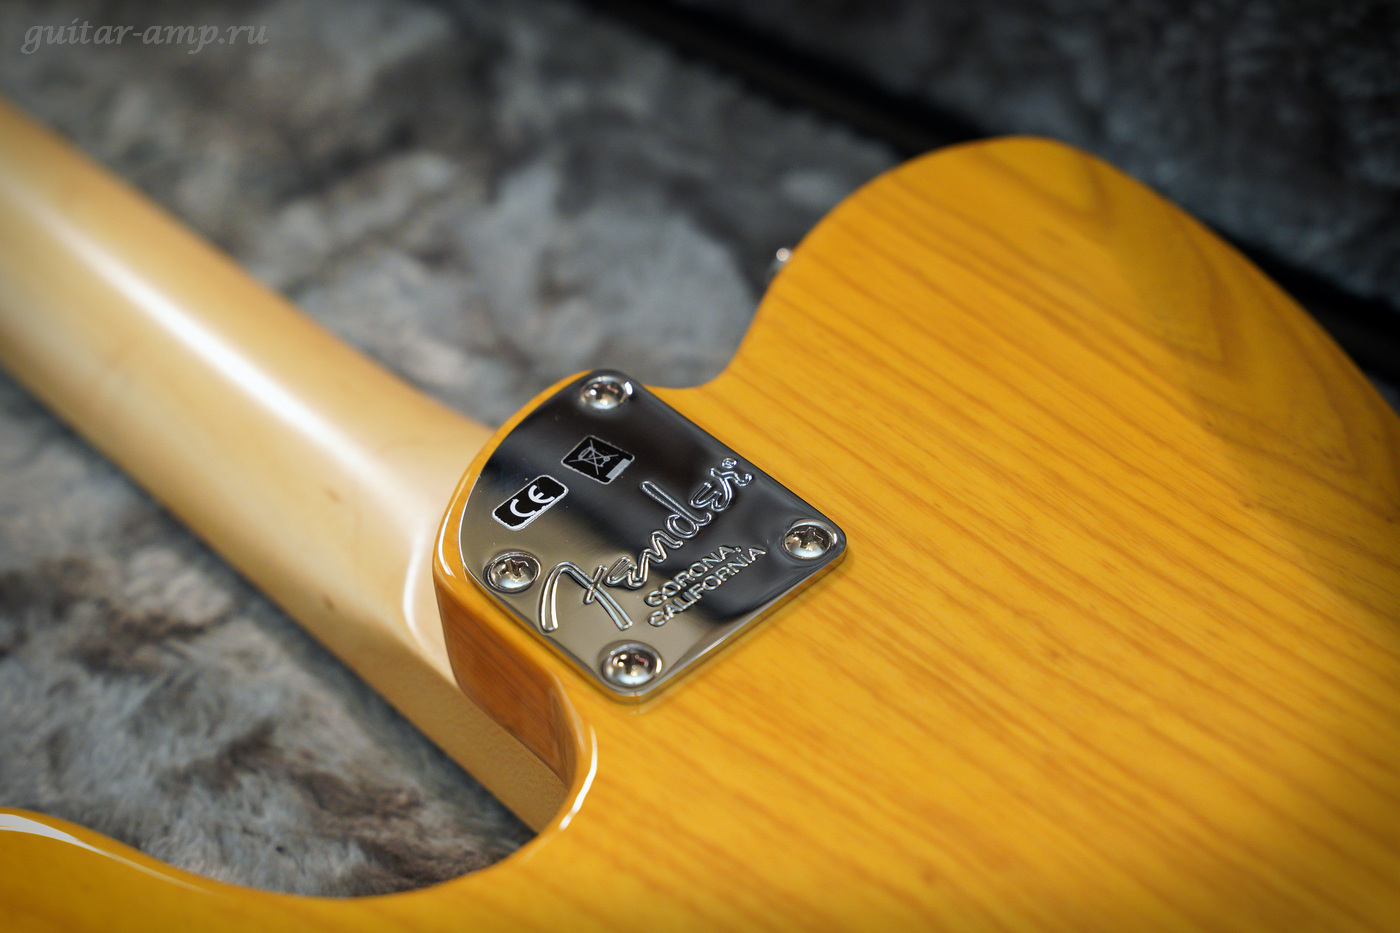 Fender American Elite Telecaster Noiseless Lightweight Ash Butterscotch Blonde 2016 08_garx1400.jpg